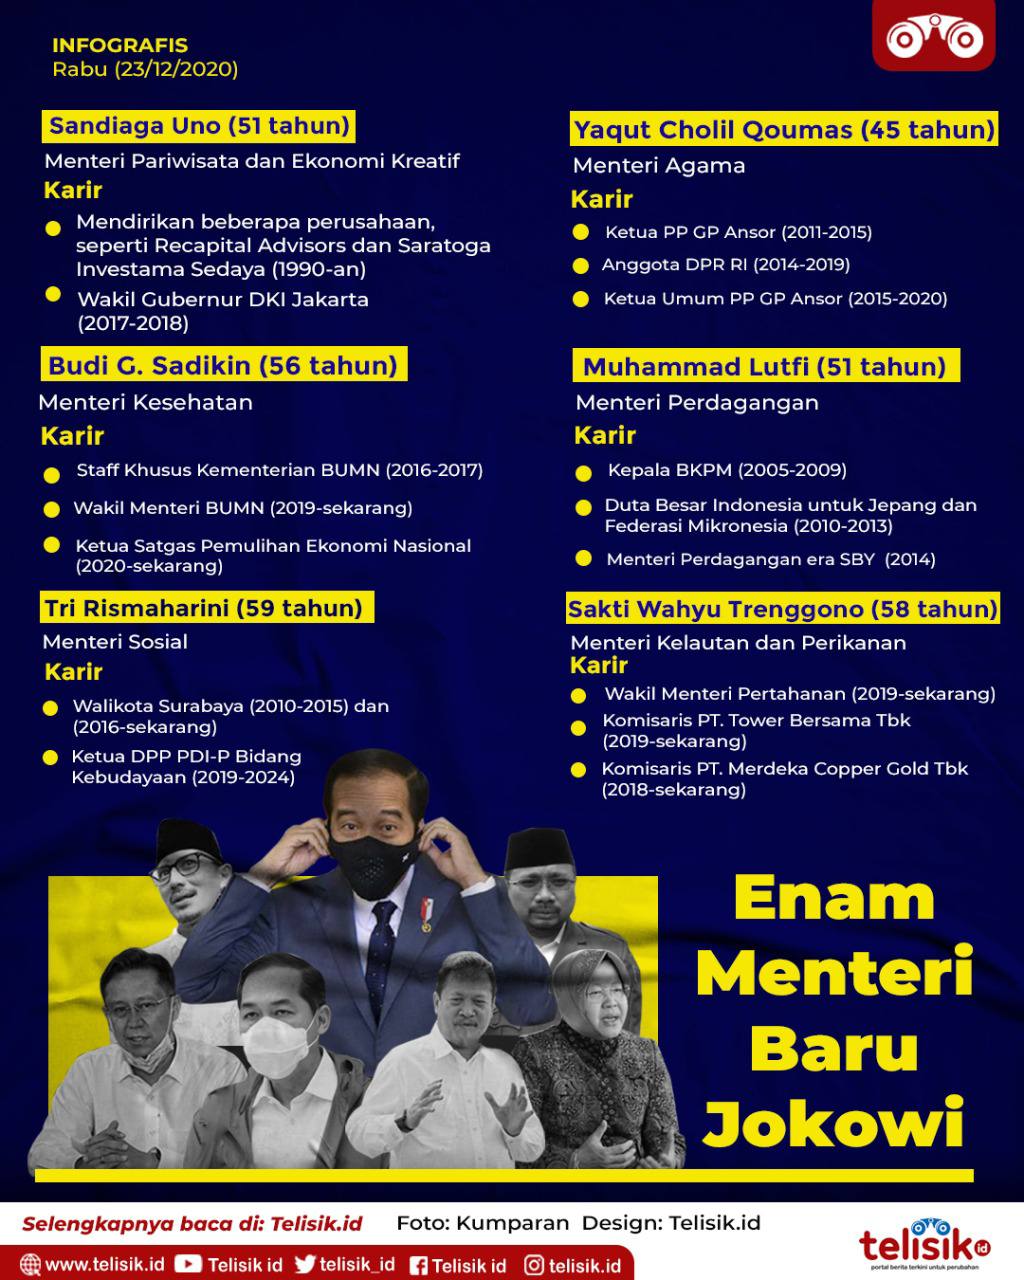 Infografis: Enam Menteri Baru Jokowi